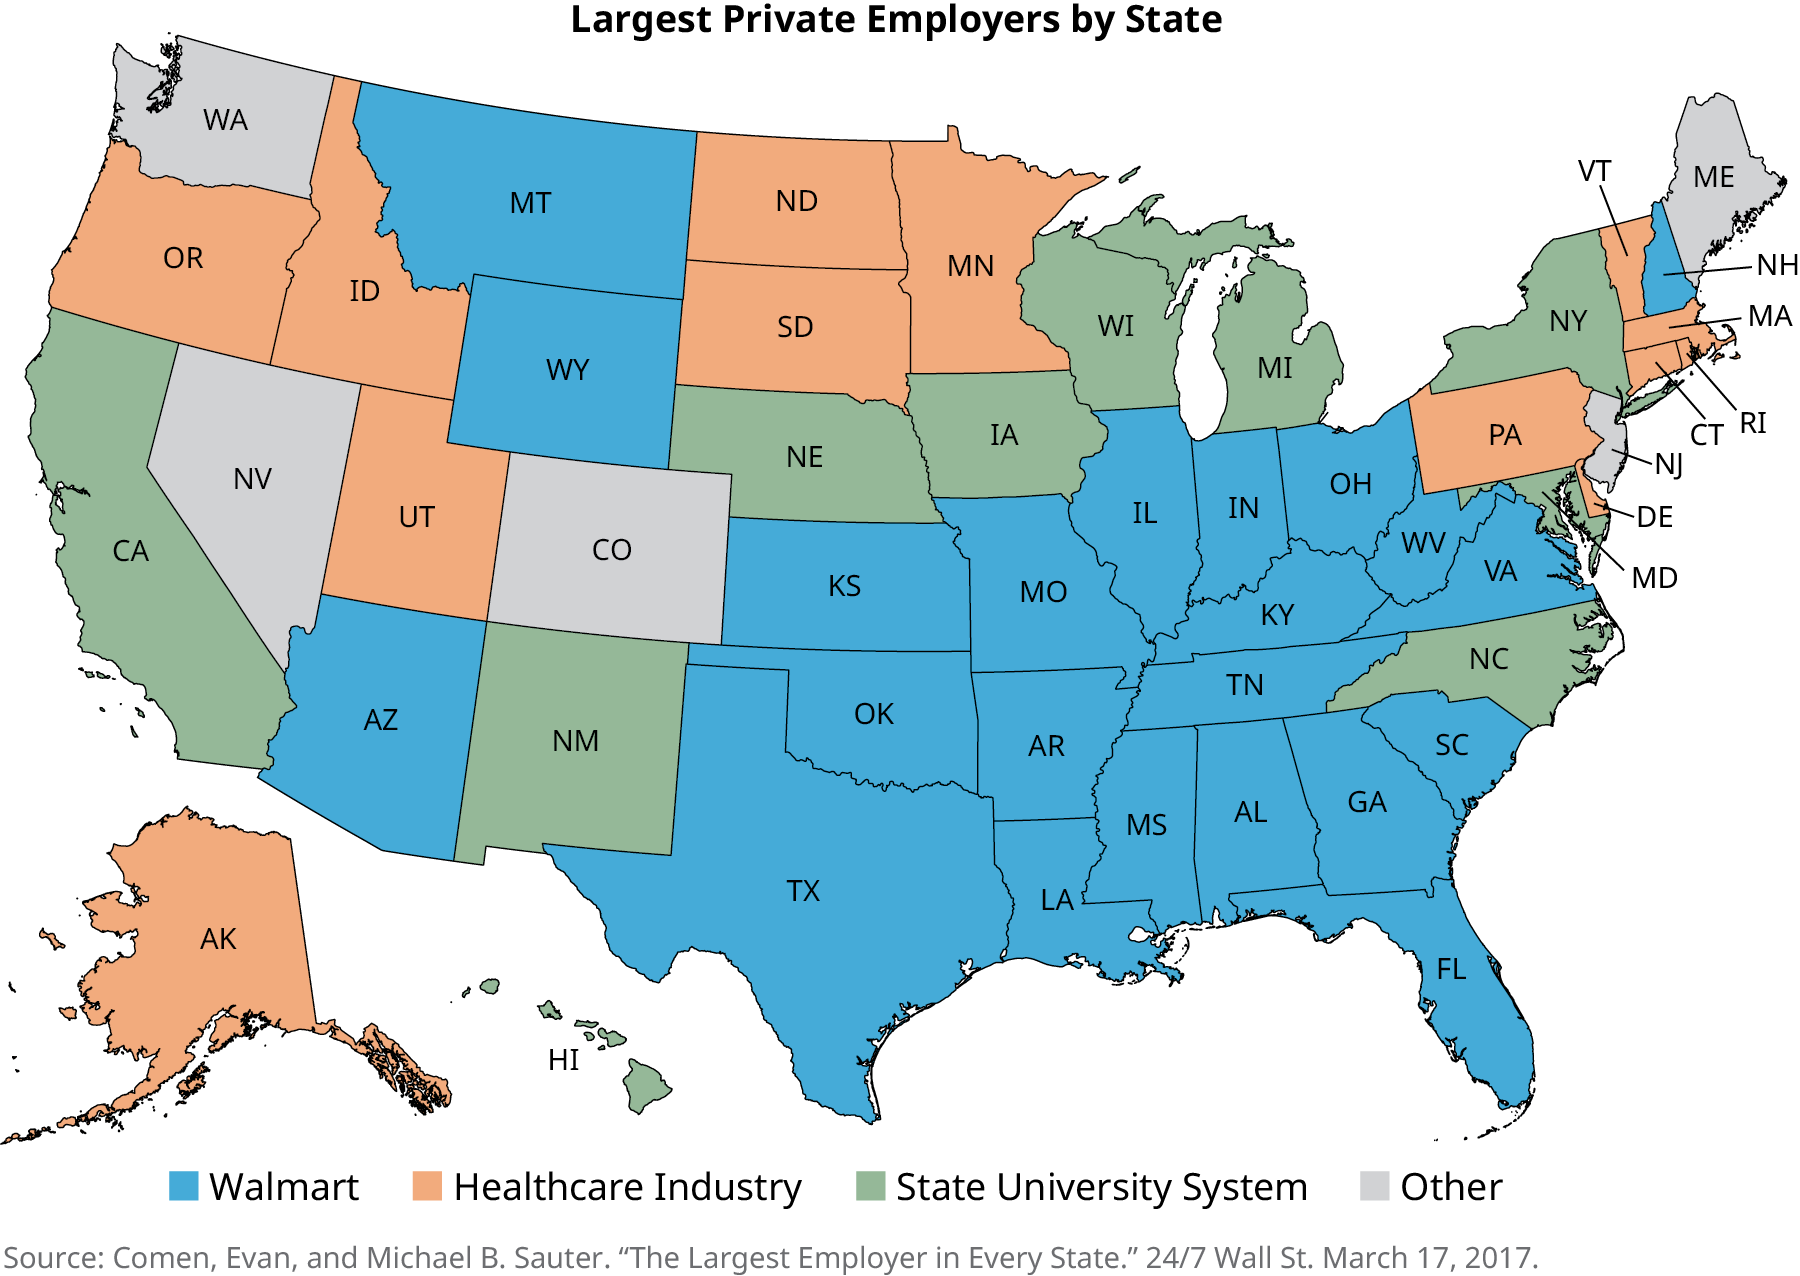 Une carte des États-Unis s'intitule « Les plus grands employeurs privés par État ». Les États où Walmart est le principal employeur sont l'Arizona, le Montana, le Wyoming, le Kansas, l'Oklahoma, le Texas, le Missouri, l'Arkansas, la Louisiane, le Mississippi, l'Alabama, le Tennessee, le Kentucky, l'Illinois, l'Indiana, l'Ohio, la Virginie-Occidentale, la Virginie, le New Hampshire, la Caroline du Sud, la Géorgie et la Floride. Les États où le principal employeur est le secteur de la santé sont l'Alaska, l'Oregon, l'Idaho, l'Utah, le Dakota du Nord, le Dakota du Sud, le Minnesota, la Pennsylvanie, le Delaware, le Vermont, le Massachusetts, le Rhode Island et le Connecticut. Les États où le principal employeur est le système universitaire d'État sont la Californie, le Nouveau-Mexique, le Nebraska, l'Iowa, le Wisconsin, le Michigan, New York, le Maryland et la Caroline du Nord. Les États où le principal employeur figure parmi les autres sont Washington, le Nevada, le Colorado, le Maine et le New Jersey.